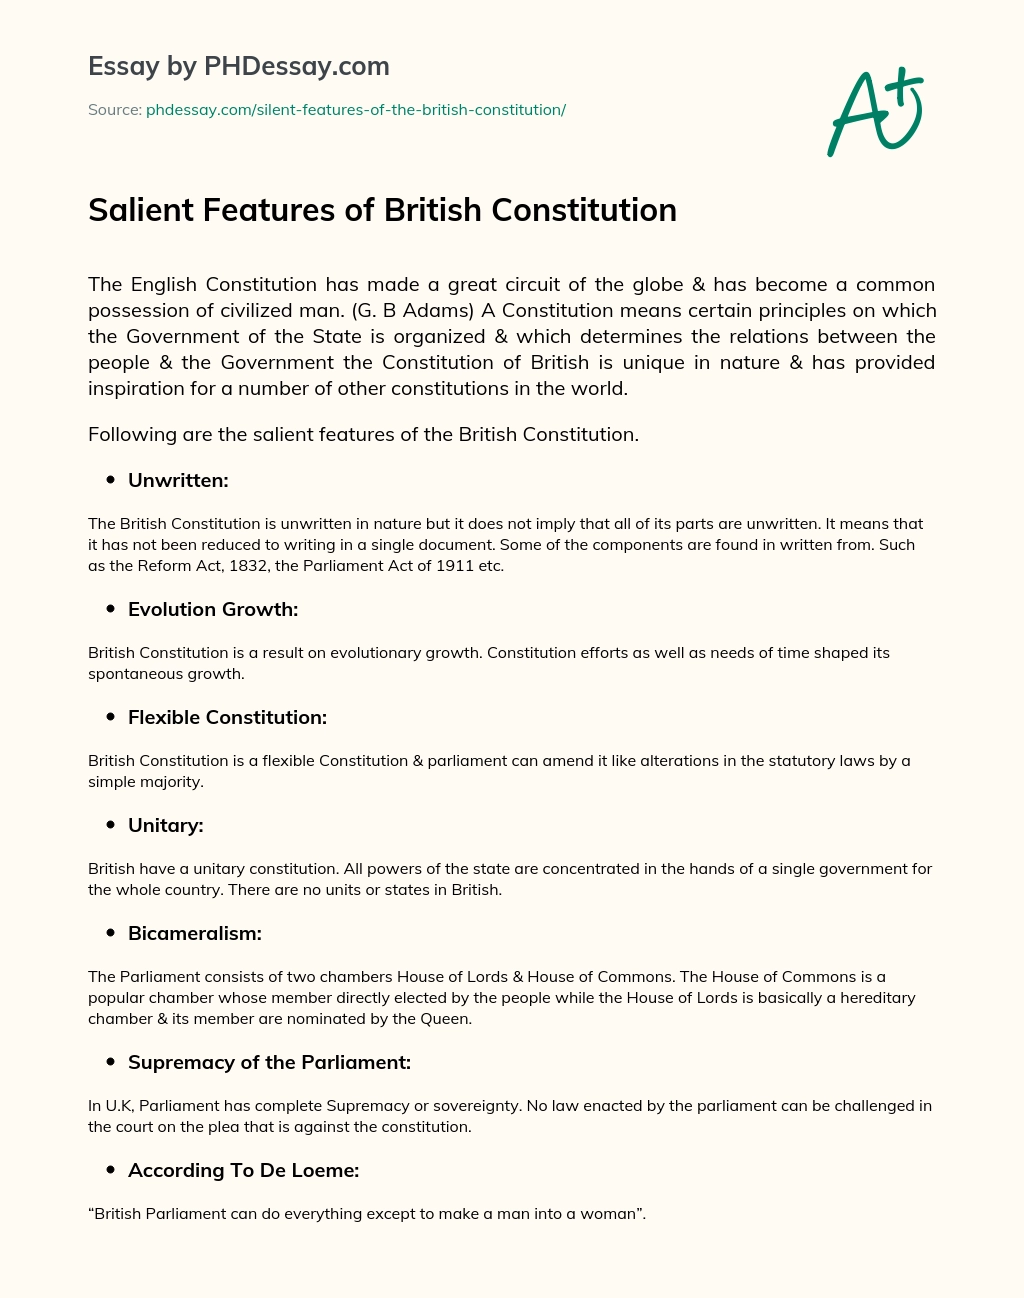 Salient Features of British Constitution essay